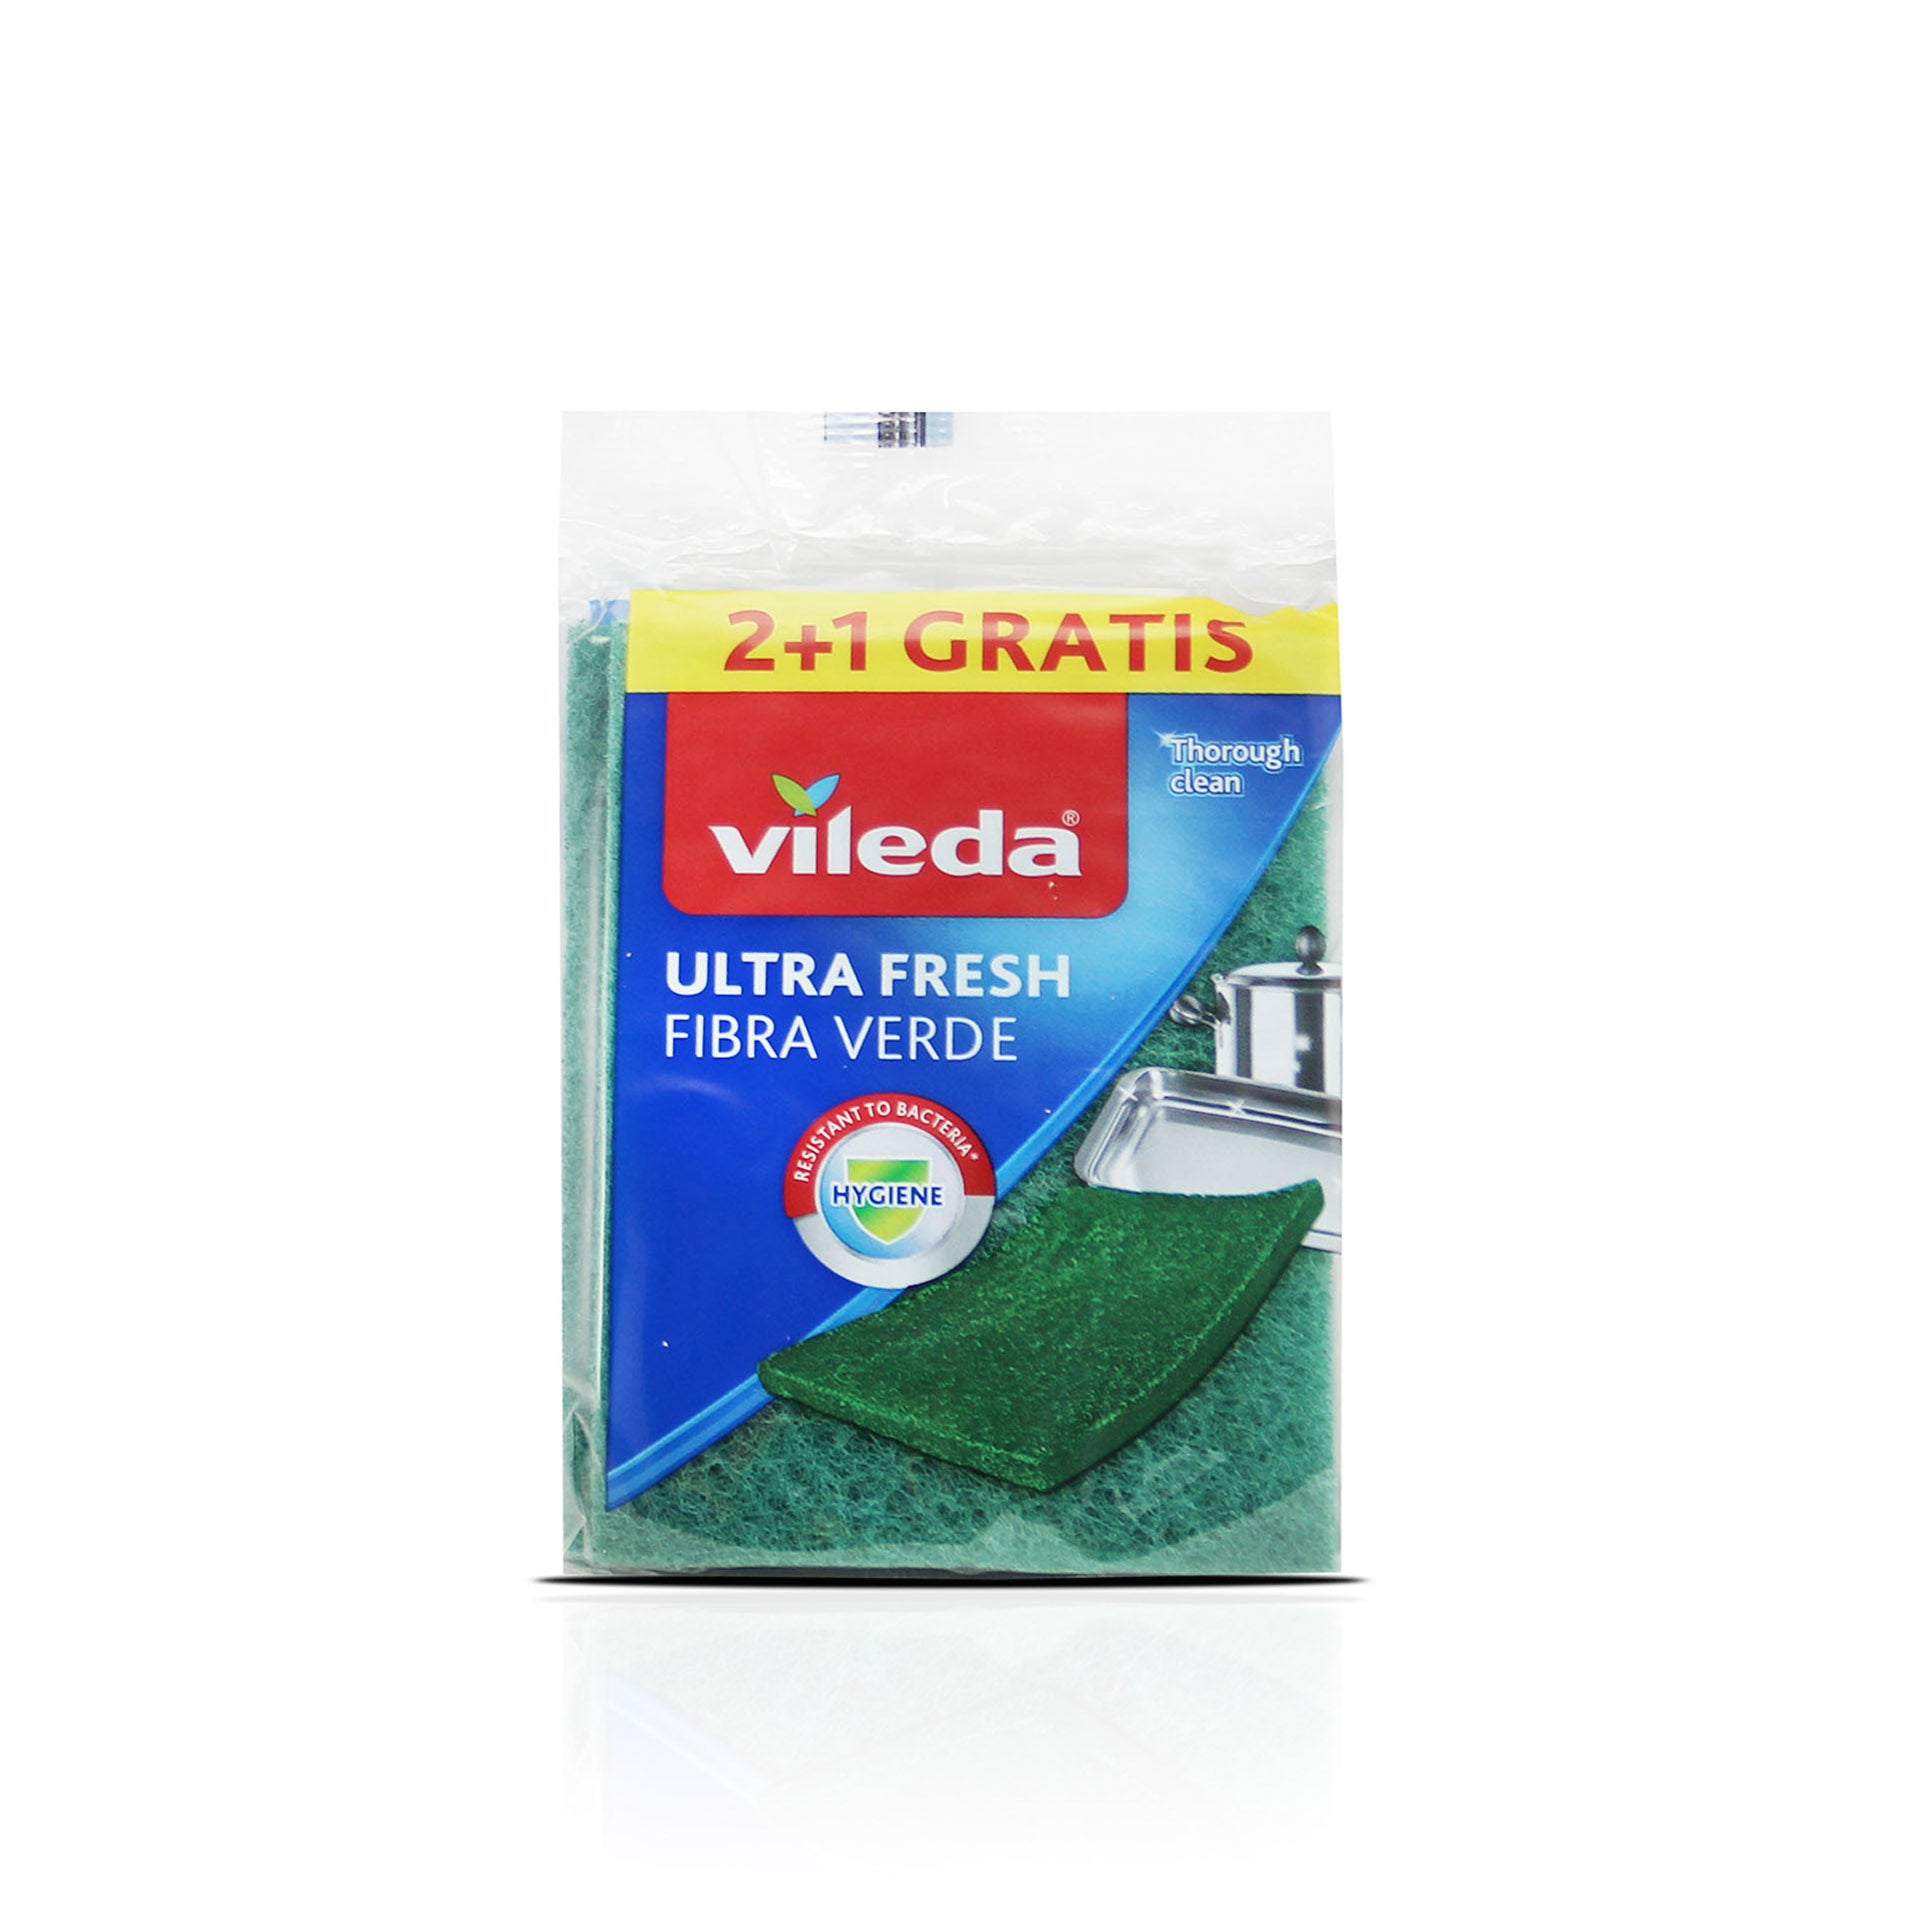 Vileda Esfregão Fibra Verde 2 + 1 Ultra Fresh